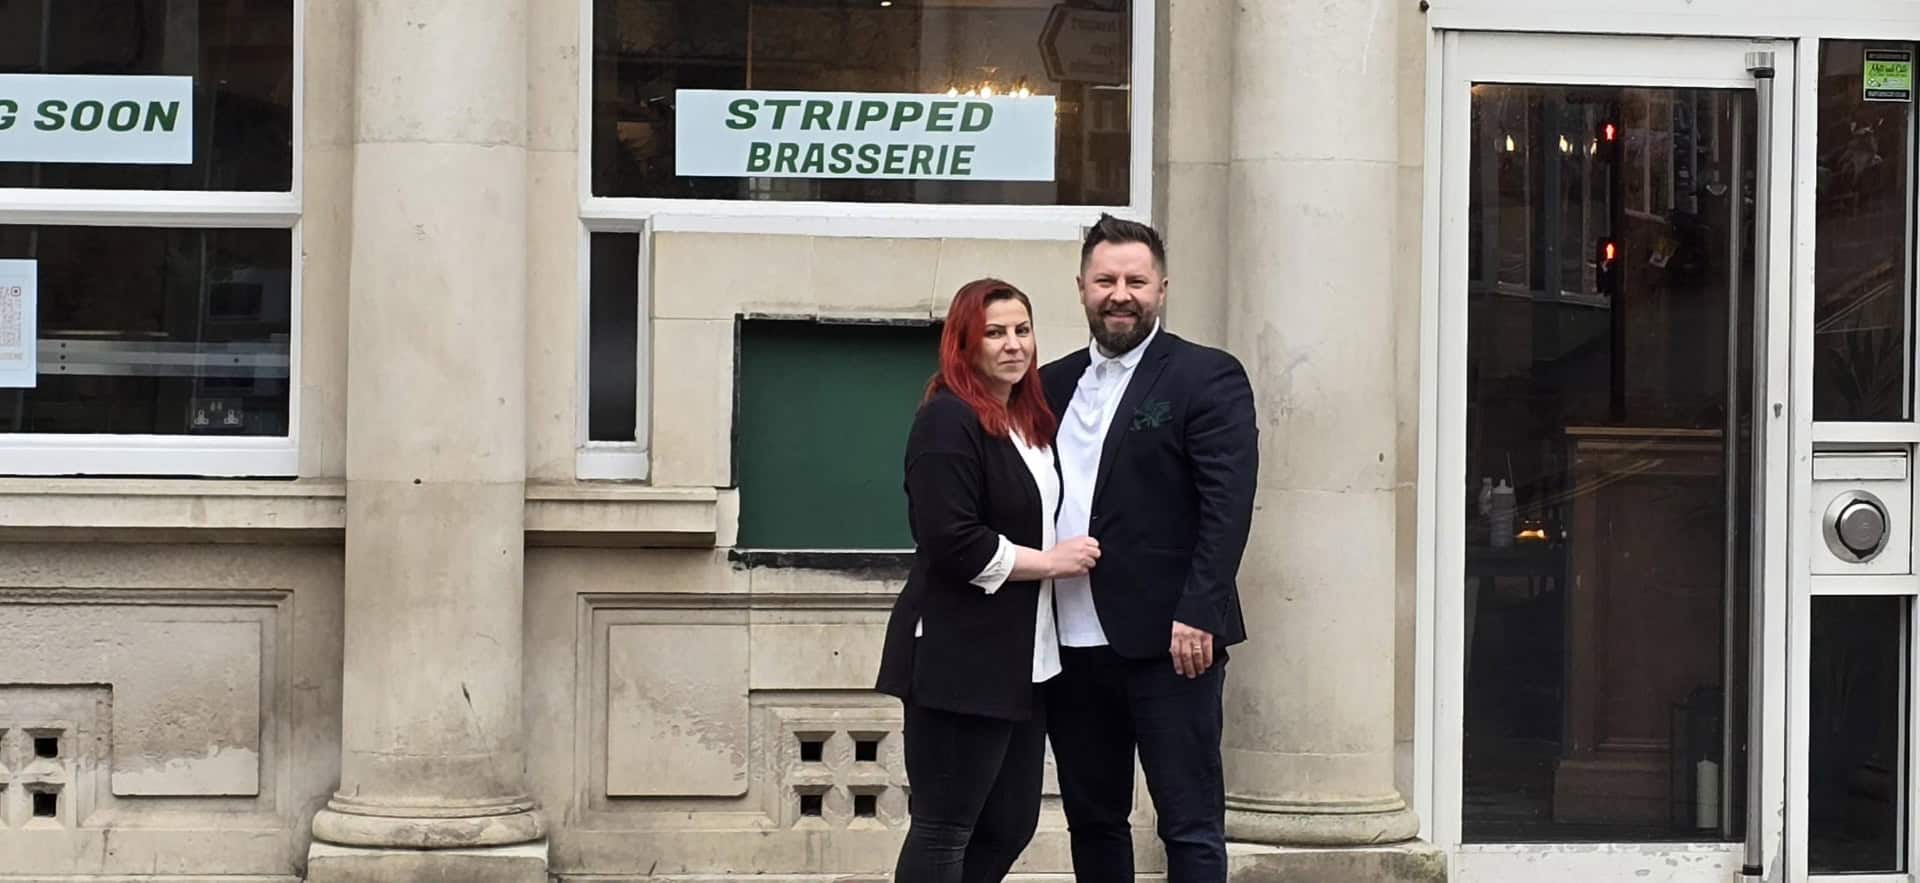 Stefan and Ramona outside Stripped Brasserie